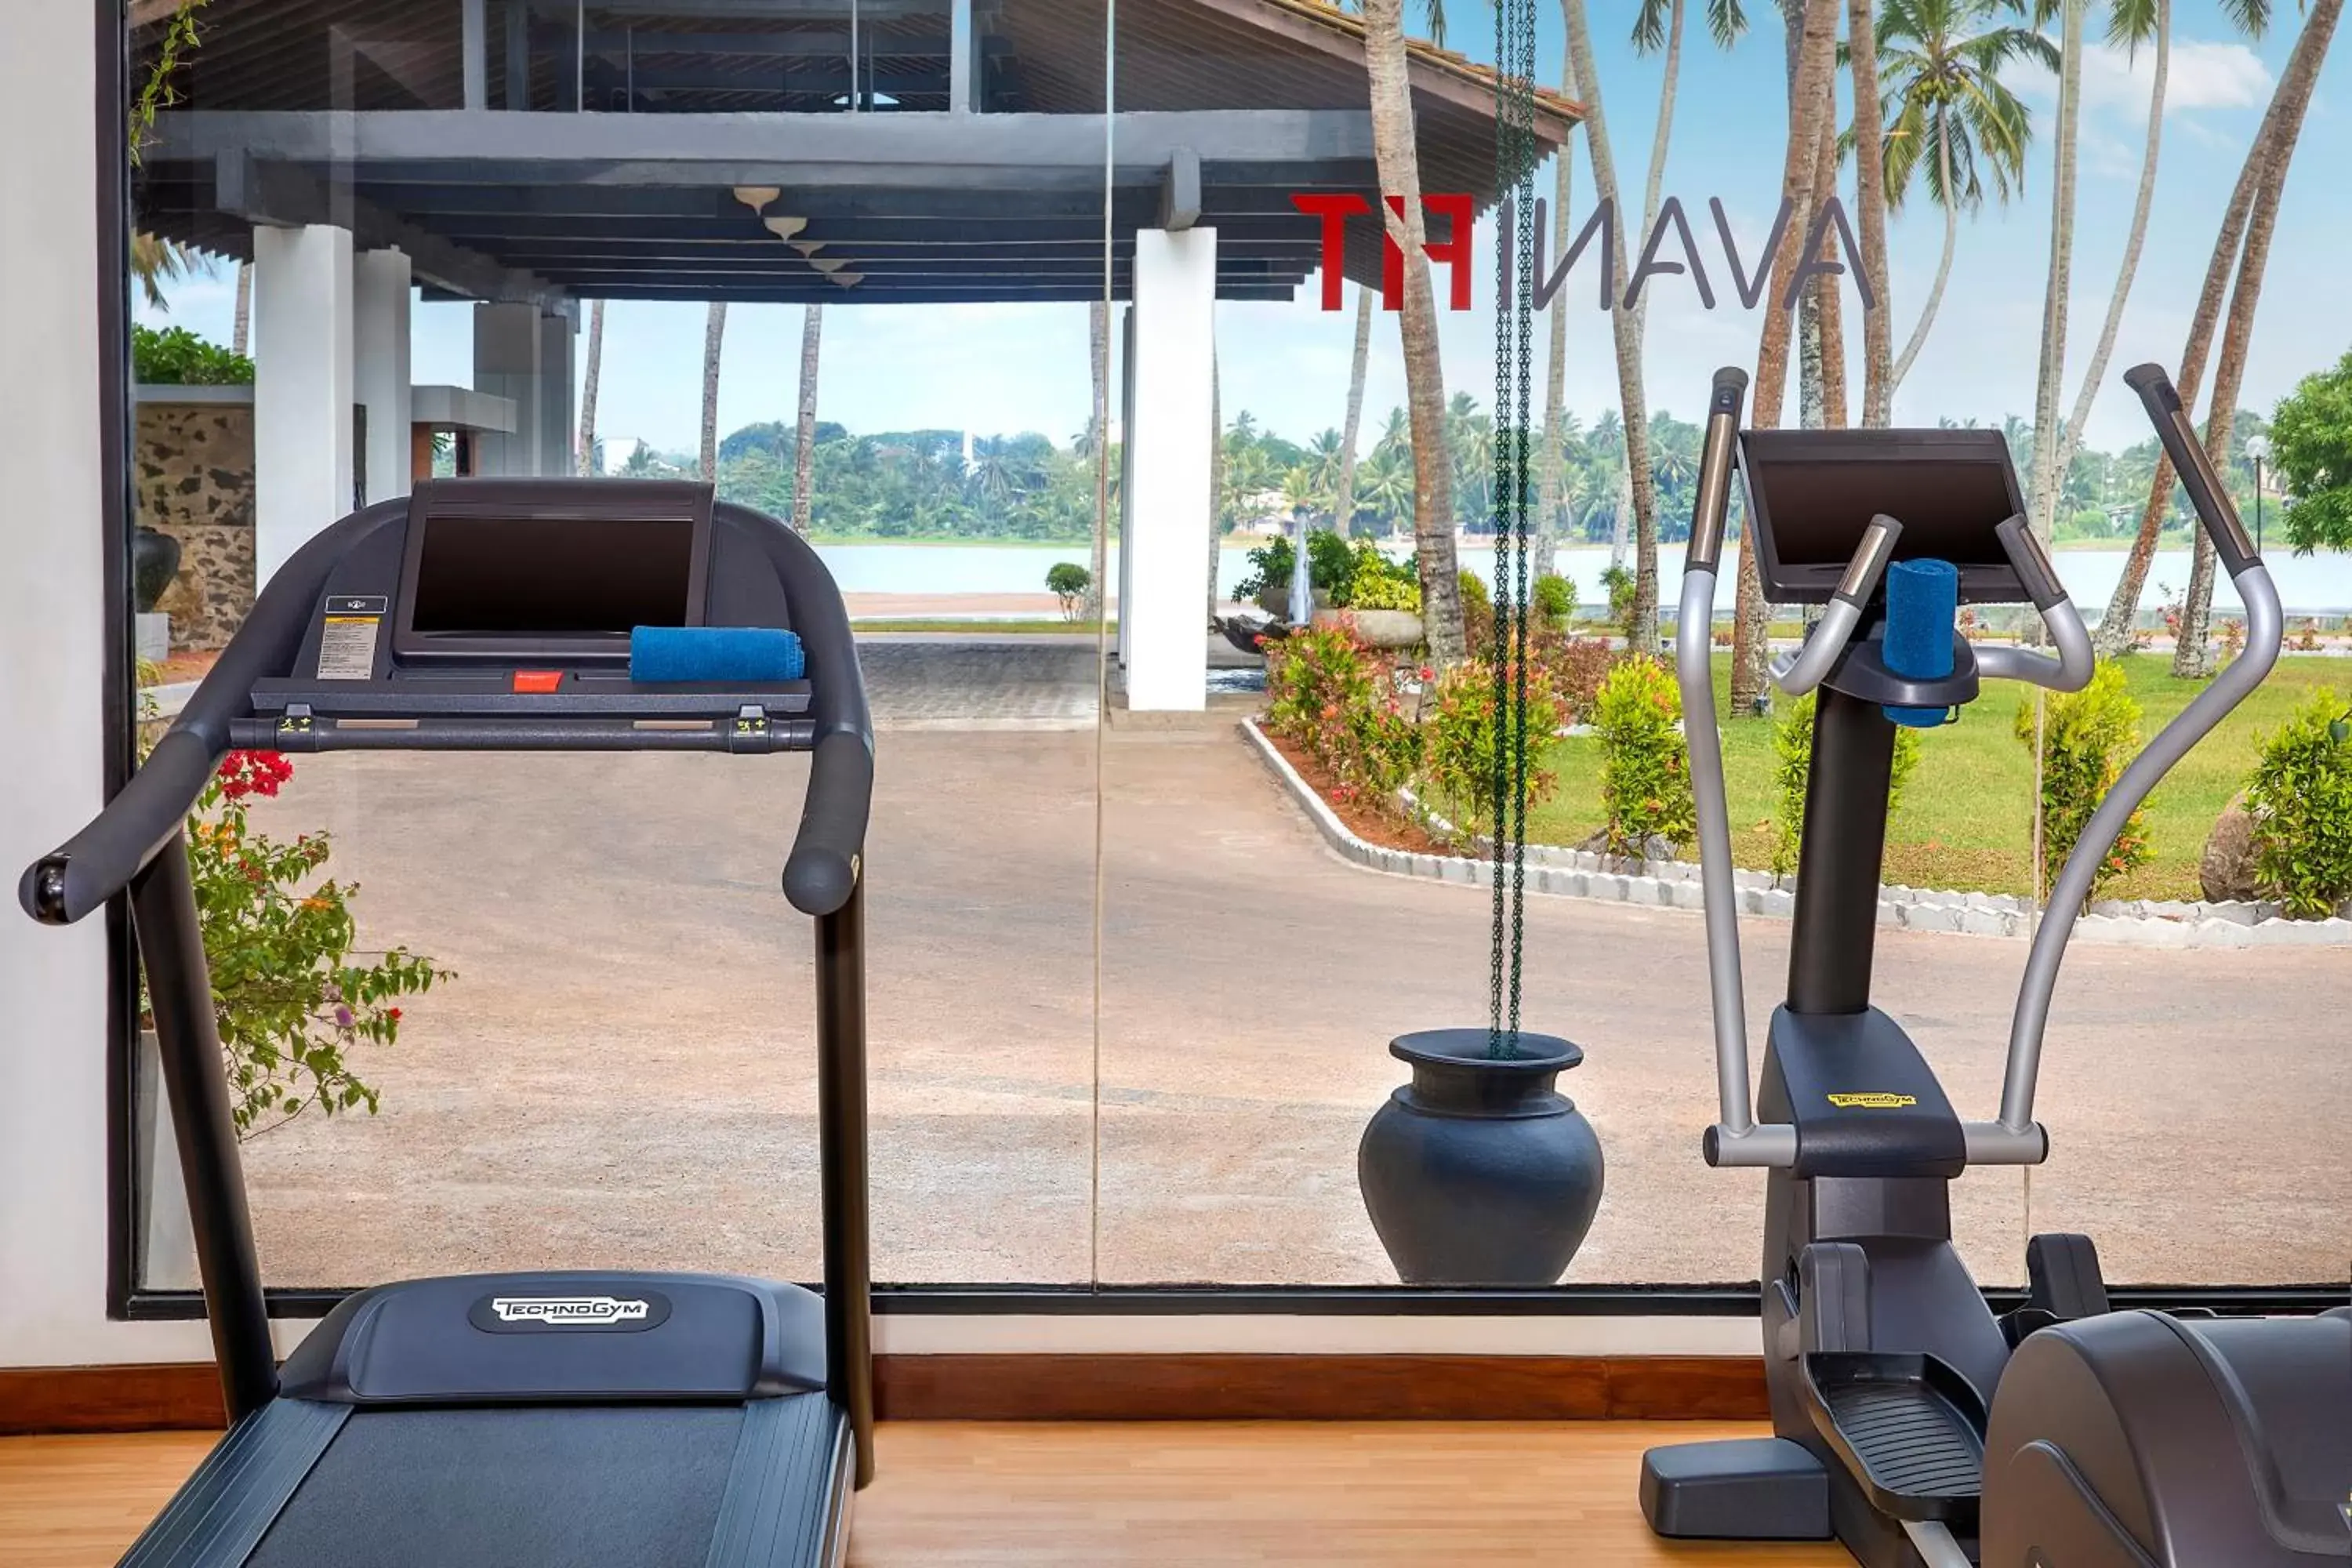 Fitness centre/facilities, Fitness Center/Facilities in Avani Kalutara Resort